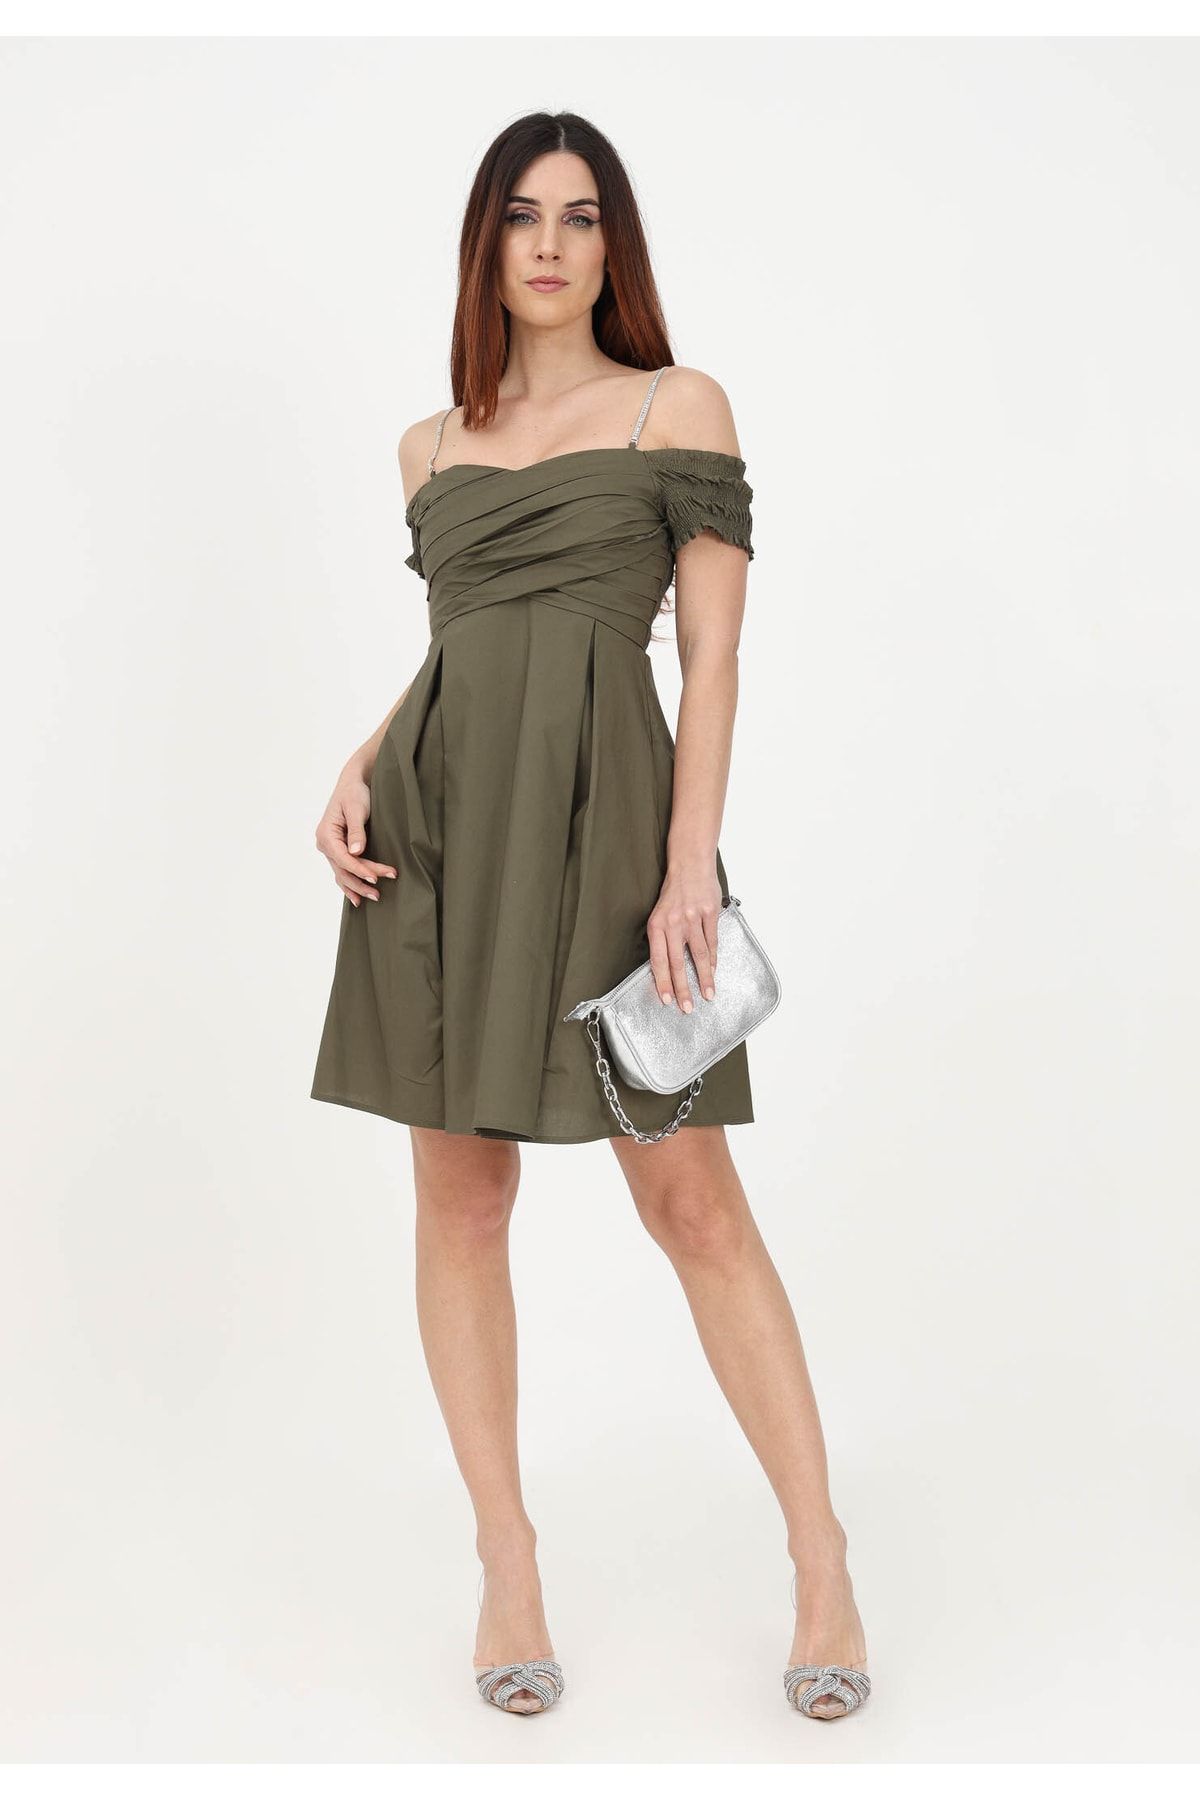 Liu Jo Kadın Askılı Mini Düşük Kol Detaylı Mini Haki Elbise Wa3006t4853-90516